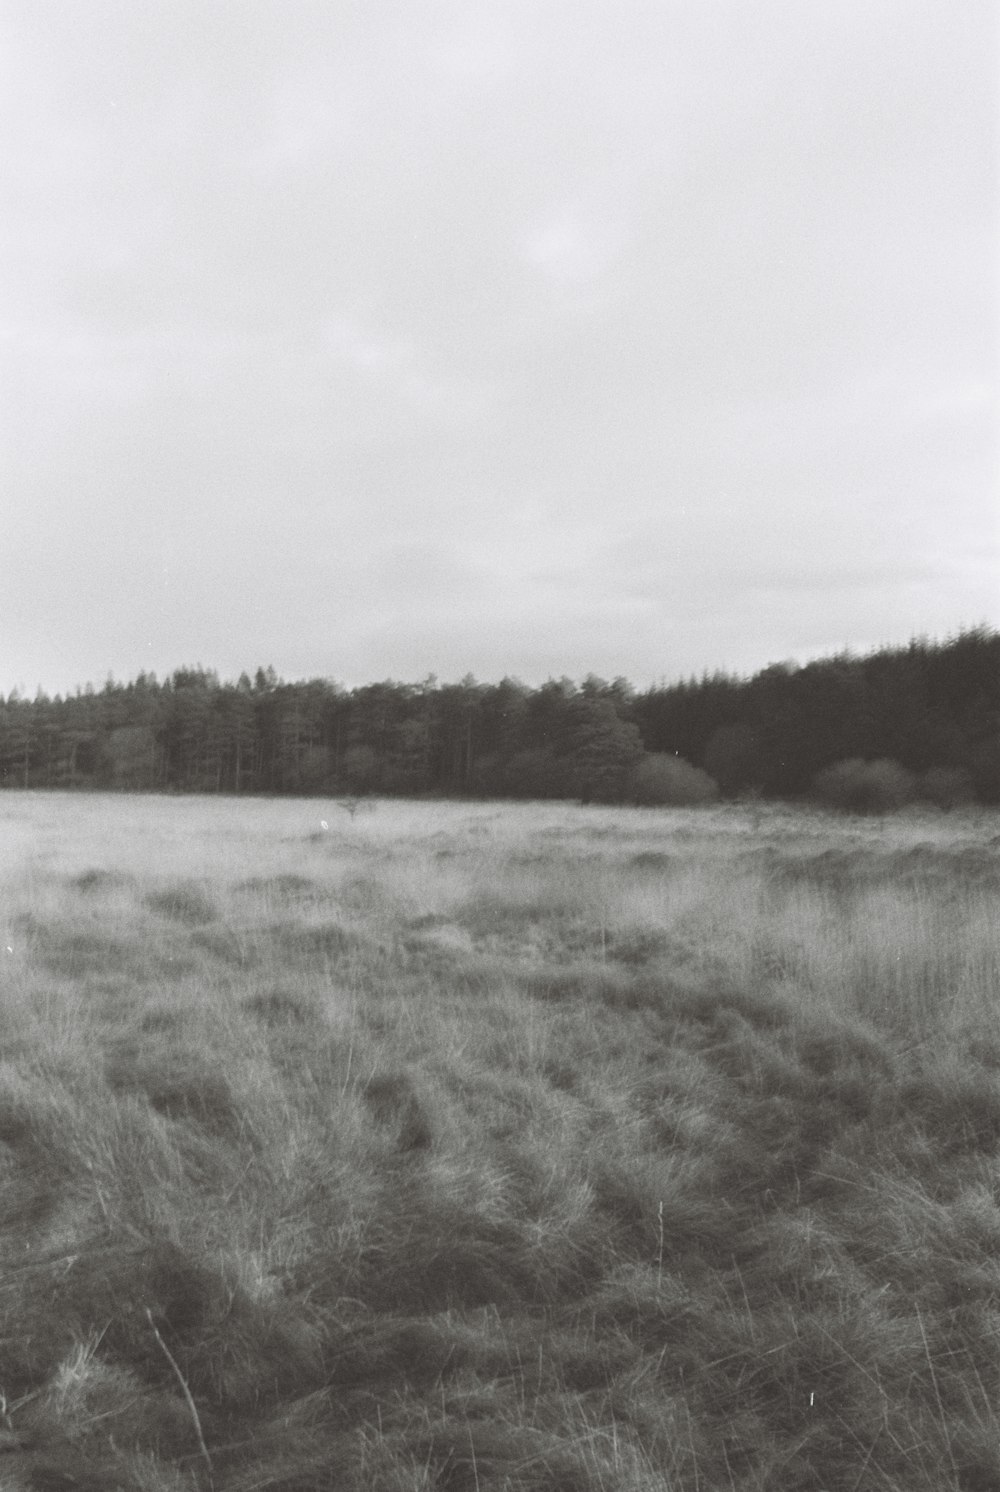 Una foto en blanco y negro de un campo con árboles en el fondo